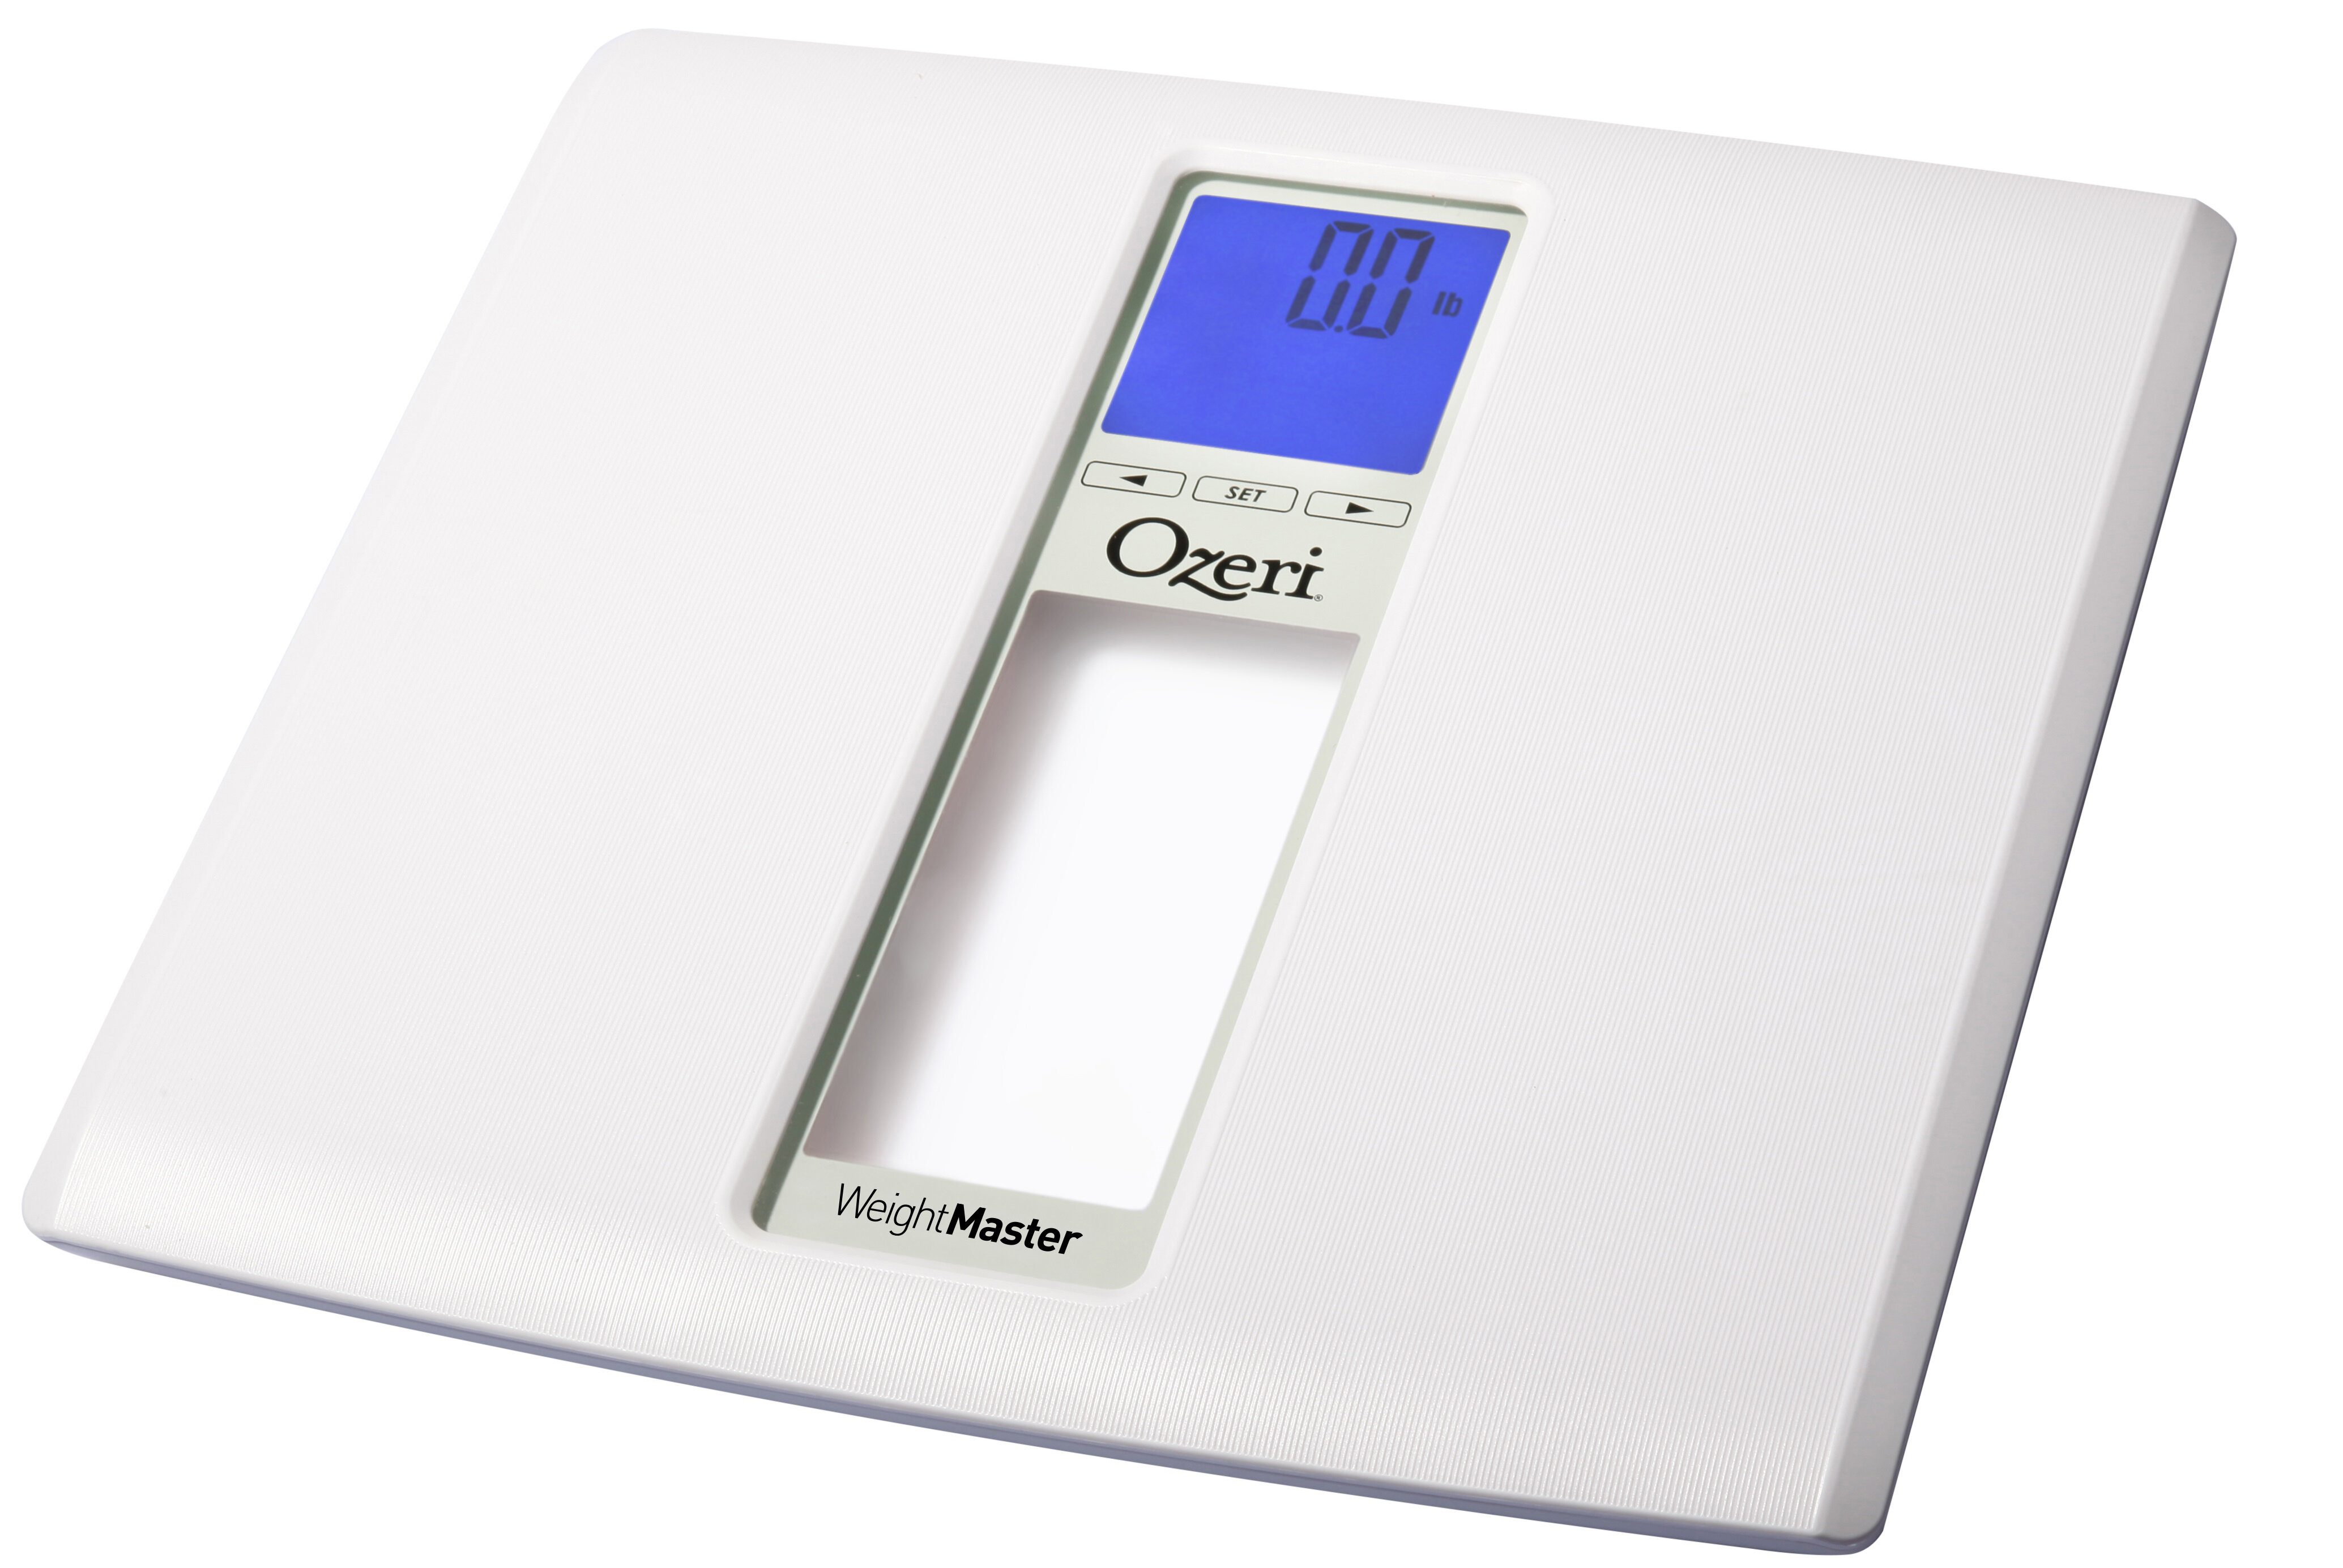 Ozeri Precision Digital Bath Scale (400 lbs. Edition) in Tempered